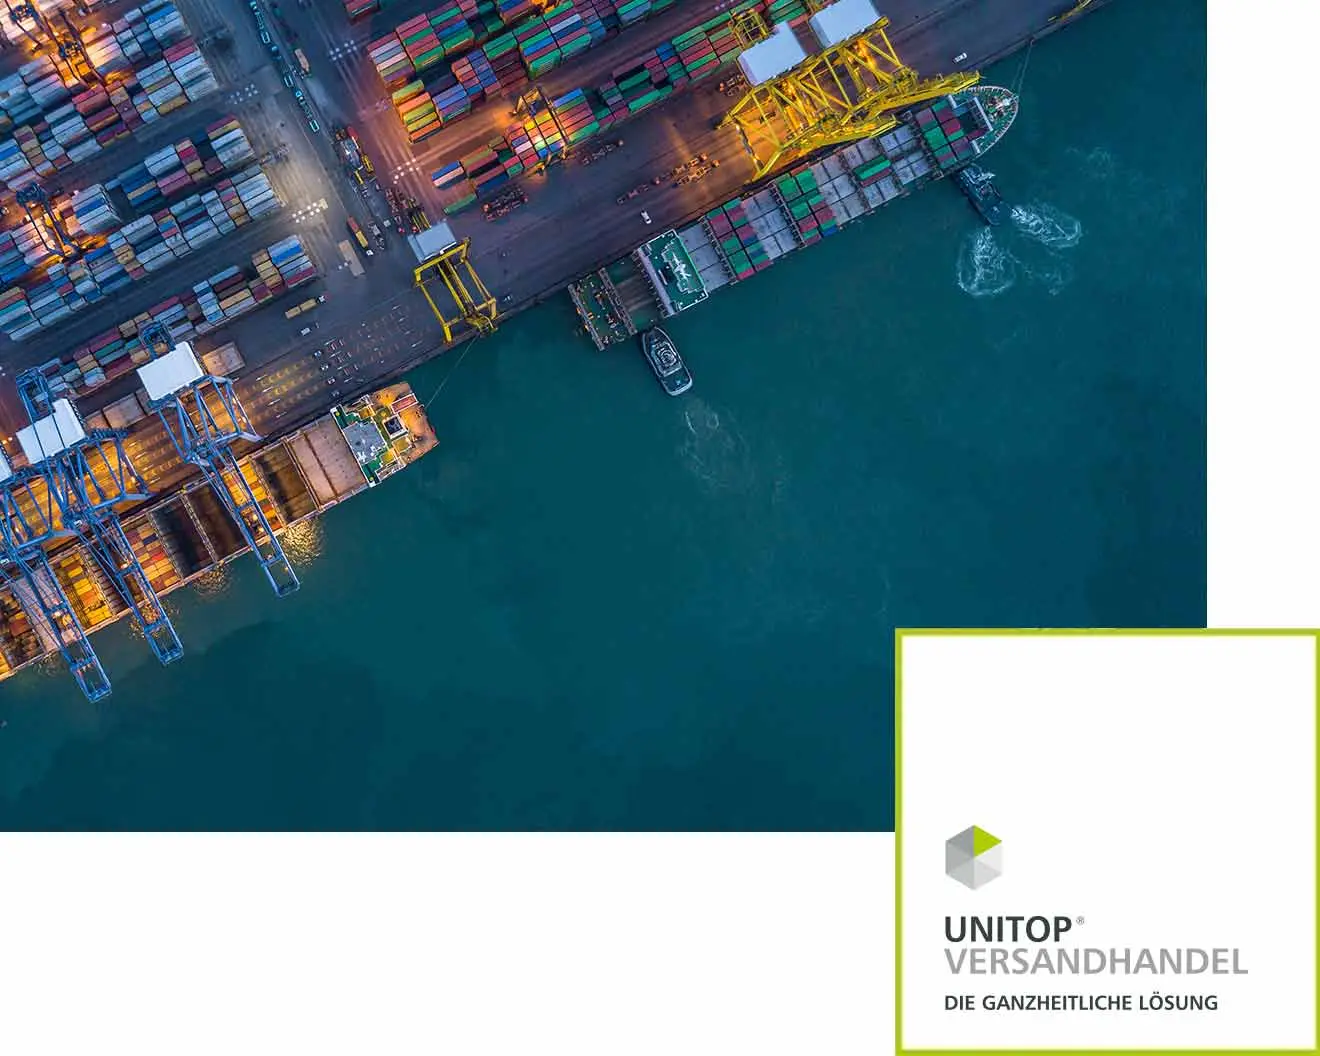 Vogelperspektive eines Hafens mit Containerschiffen und farbenfrohen Containern, die auf dem Dock gestapelt sind. Unten rechts ist das Logo unitop Versandhandel zu sehen.